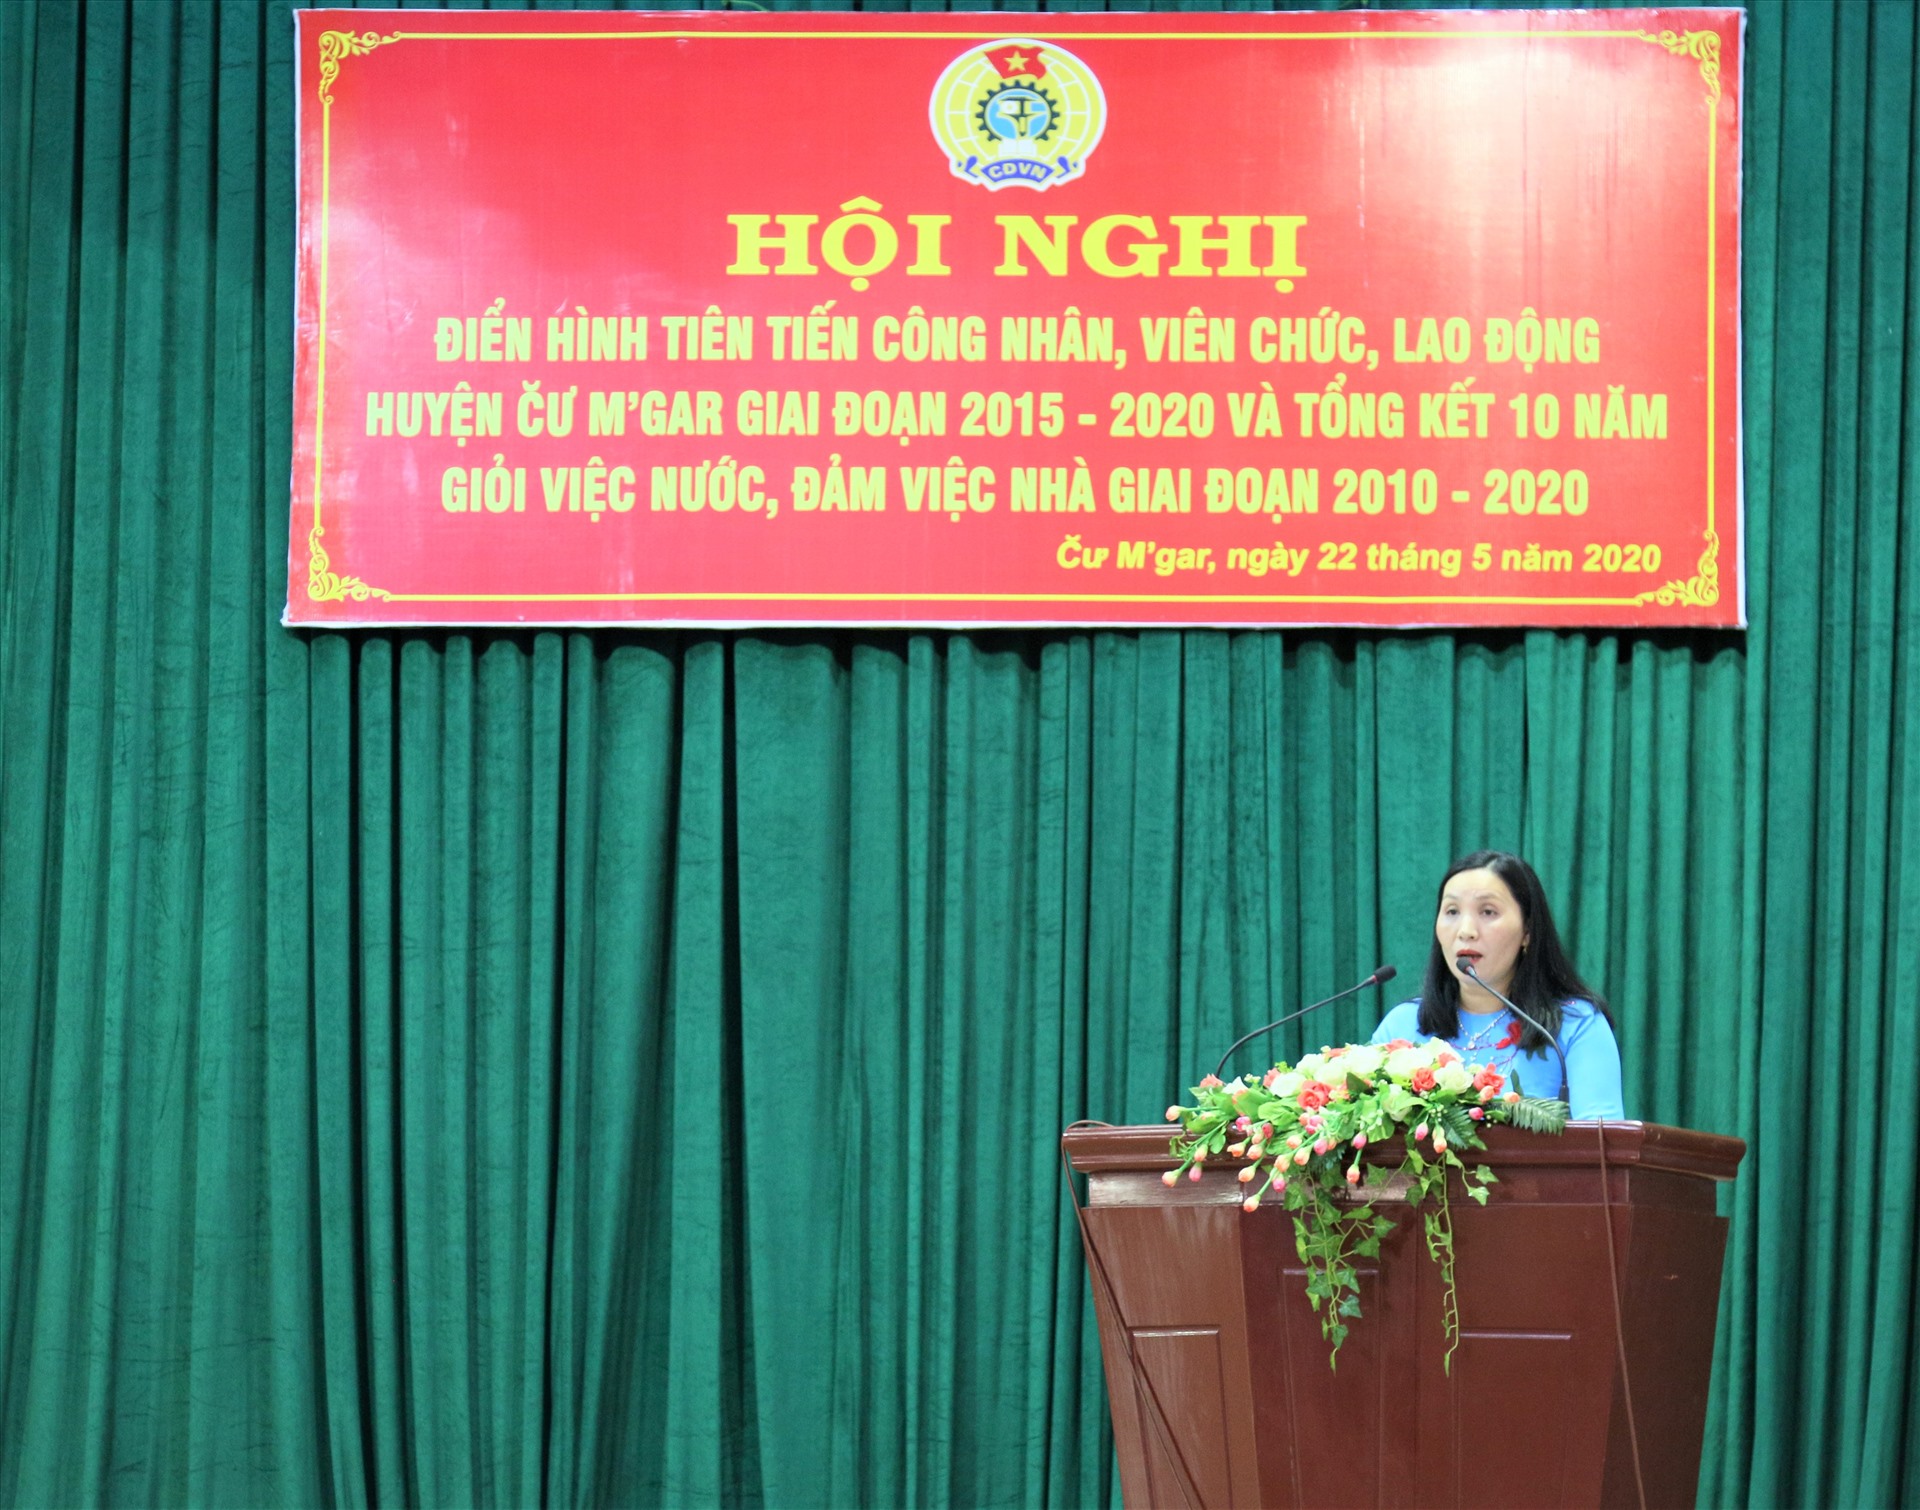 Bà Nguyễn Thị Vọng - Chủ tịch LĐLĐ huyện Cư M'Gar phát biểu tại Hội nghị. Ảnh: Bảo Trung